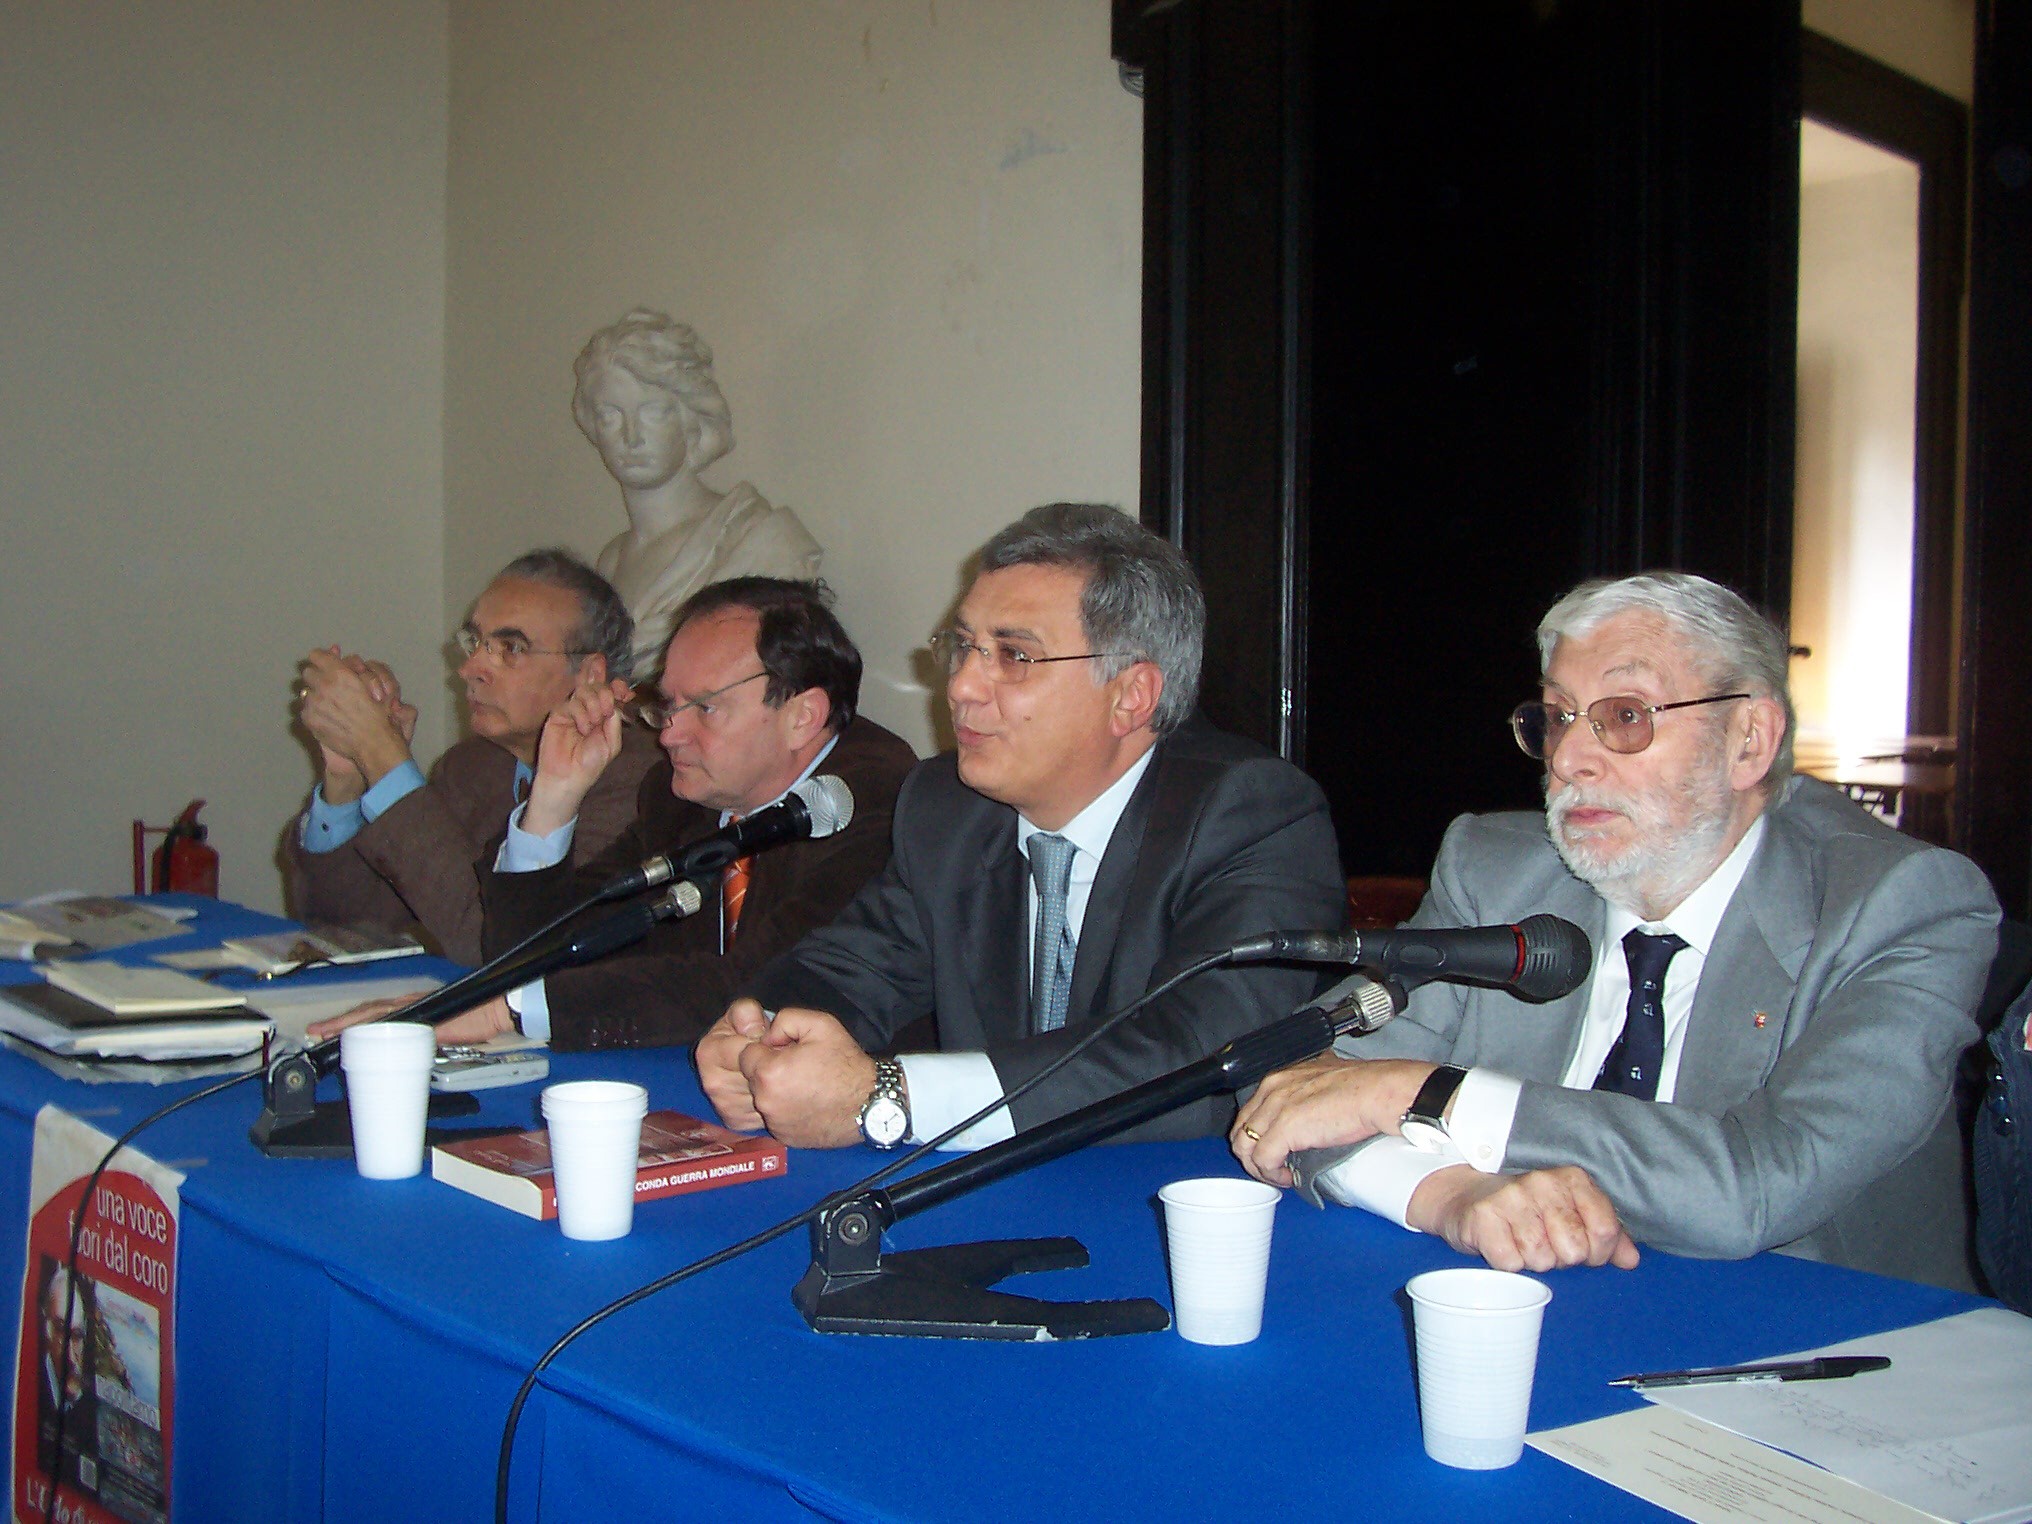 Presentazione del libro ’Napolitamo’, di Giannino Di Stasio - Sala dei Baroni, Napoli, 6 aprile 2008: intervento di Carlo Lamura